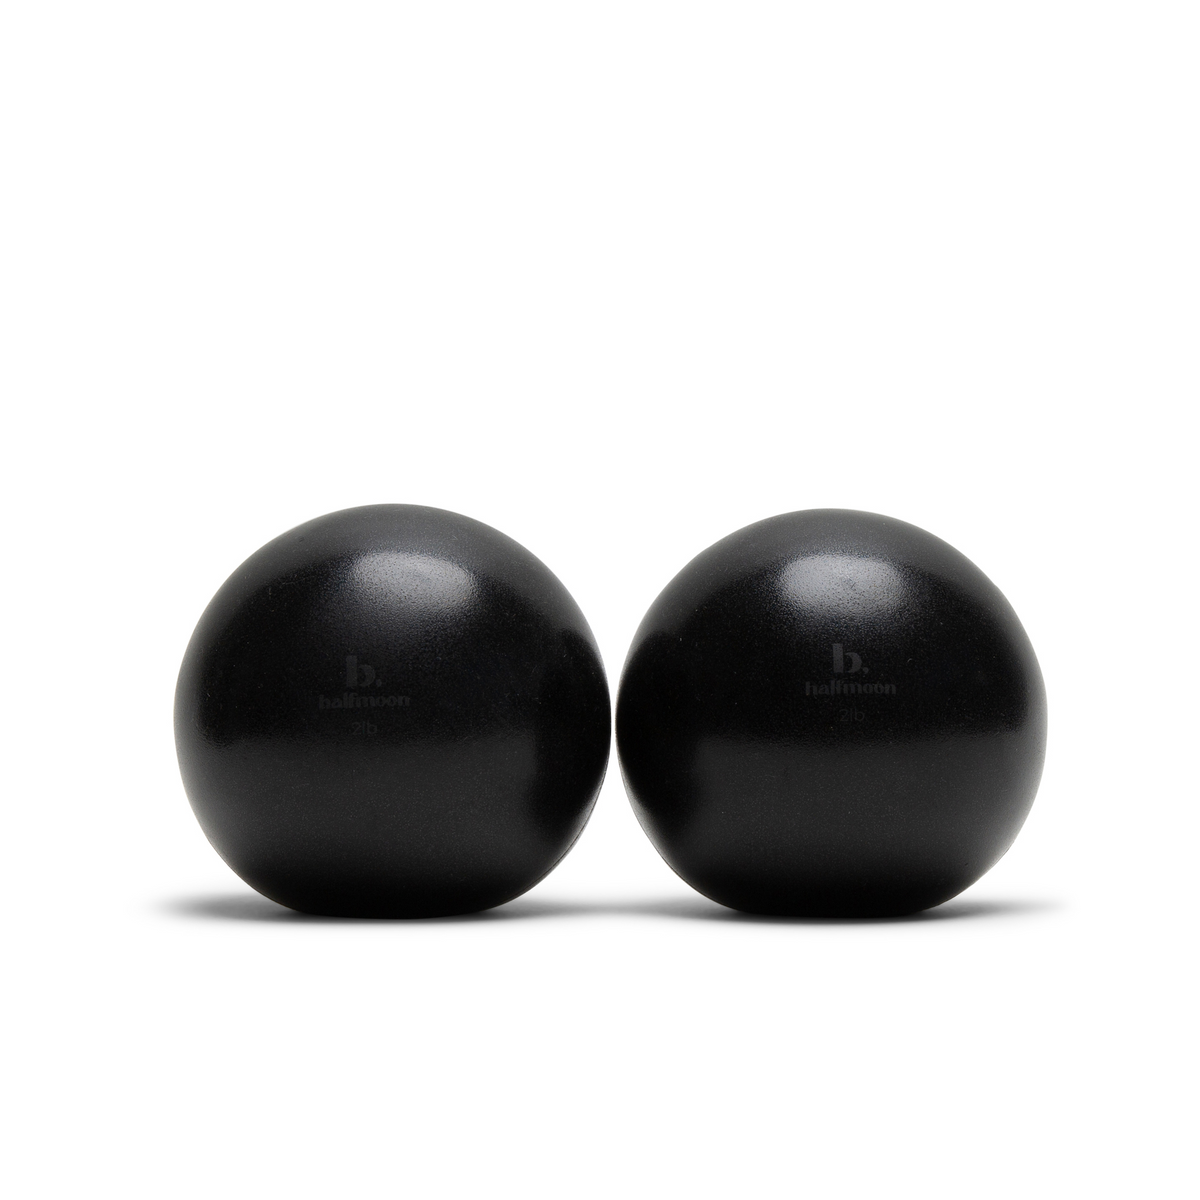 b, halfmoon Sphere Weights (2lbs) both balls